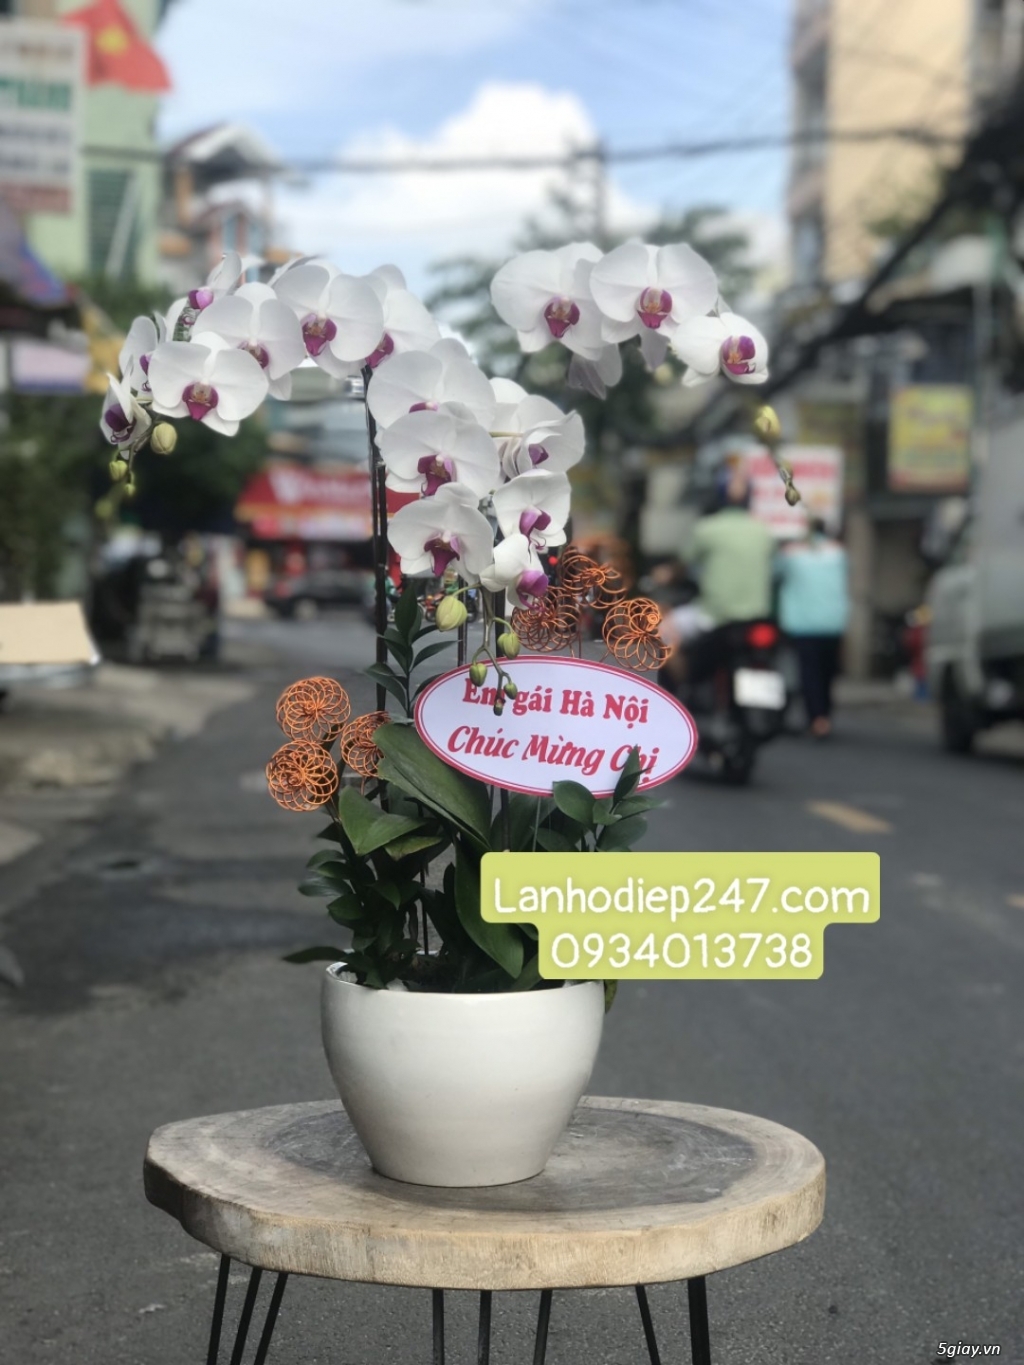 Mua Lan Hồ Điệp cao cấp ở Sài Gòn - Shop hoa tươi 247 uy tín HÀNG ĐẦU - 1